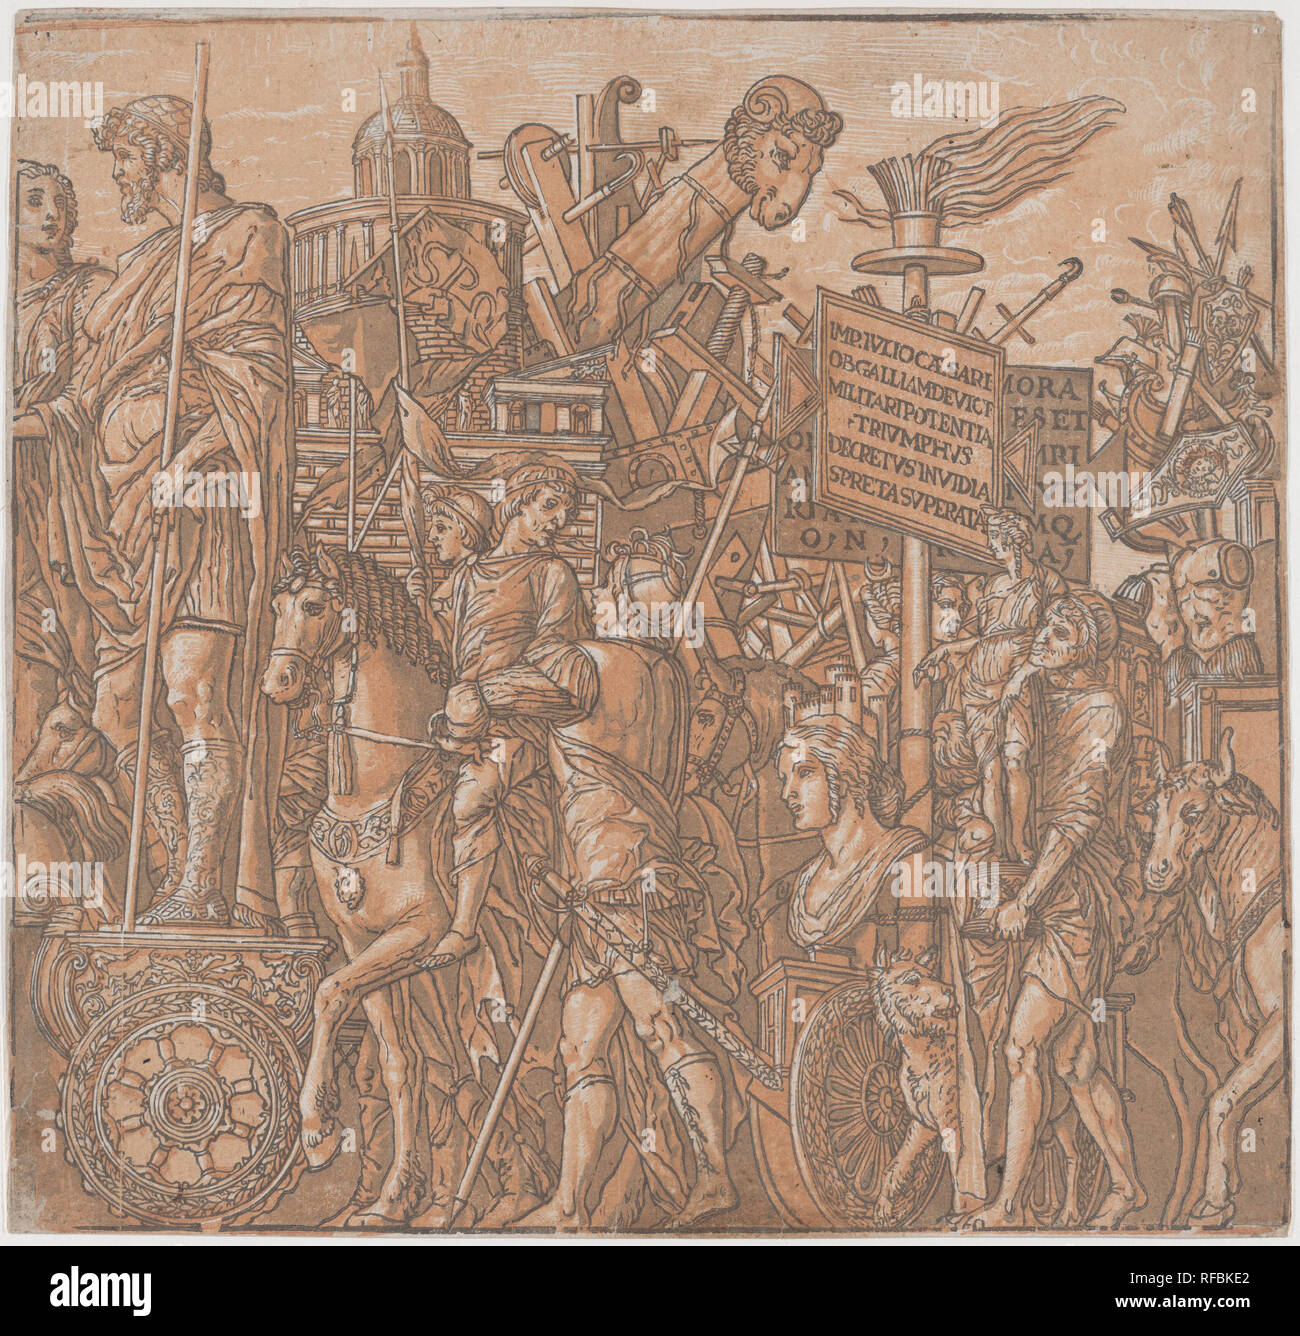 Fiche 2 : une figure sur un char triomphal entouré par des figures à cheval, de le triomphe de Jules César. Artiste : Andrea Mantegna (après l'italien, l'Isola di Carturo 1430/31-1506 Mantoue) ; Andrea Andreani (Mantoue, 1558/1559-1629) ; Rapporteur pour avis intermédiaire Bernardo Malpizzi (italien, 1555-1623). Fiche Technique : Dimensions : 14 × 9/16 15 1/4 in. (37 × 38,7 cm). Date : 1599. Musée : Metropolitan Museum of Art, New York, USA. Banque D'Images